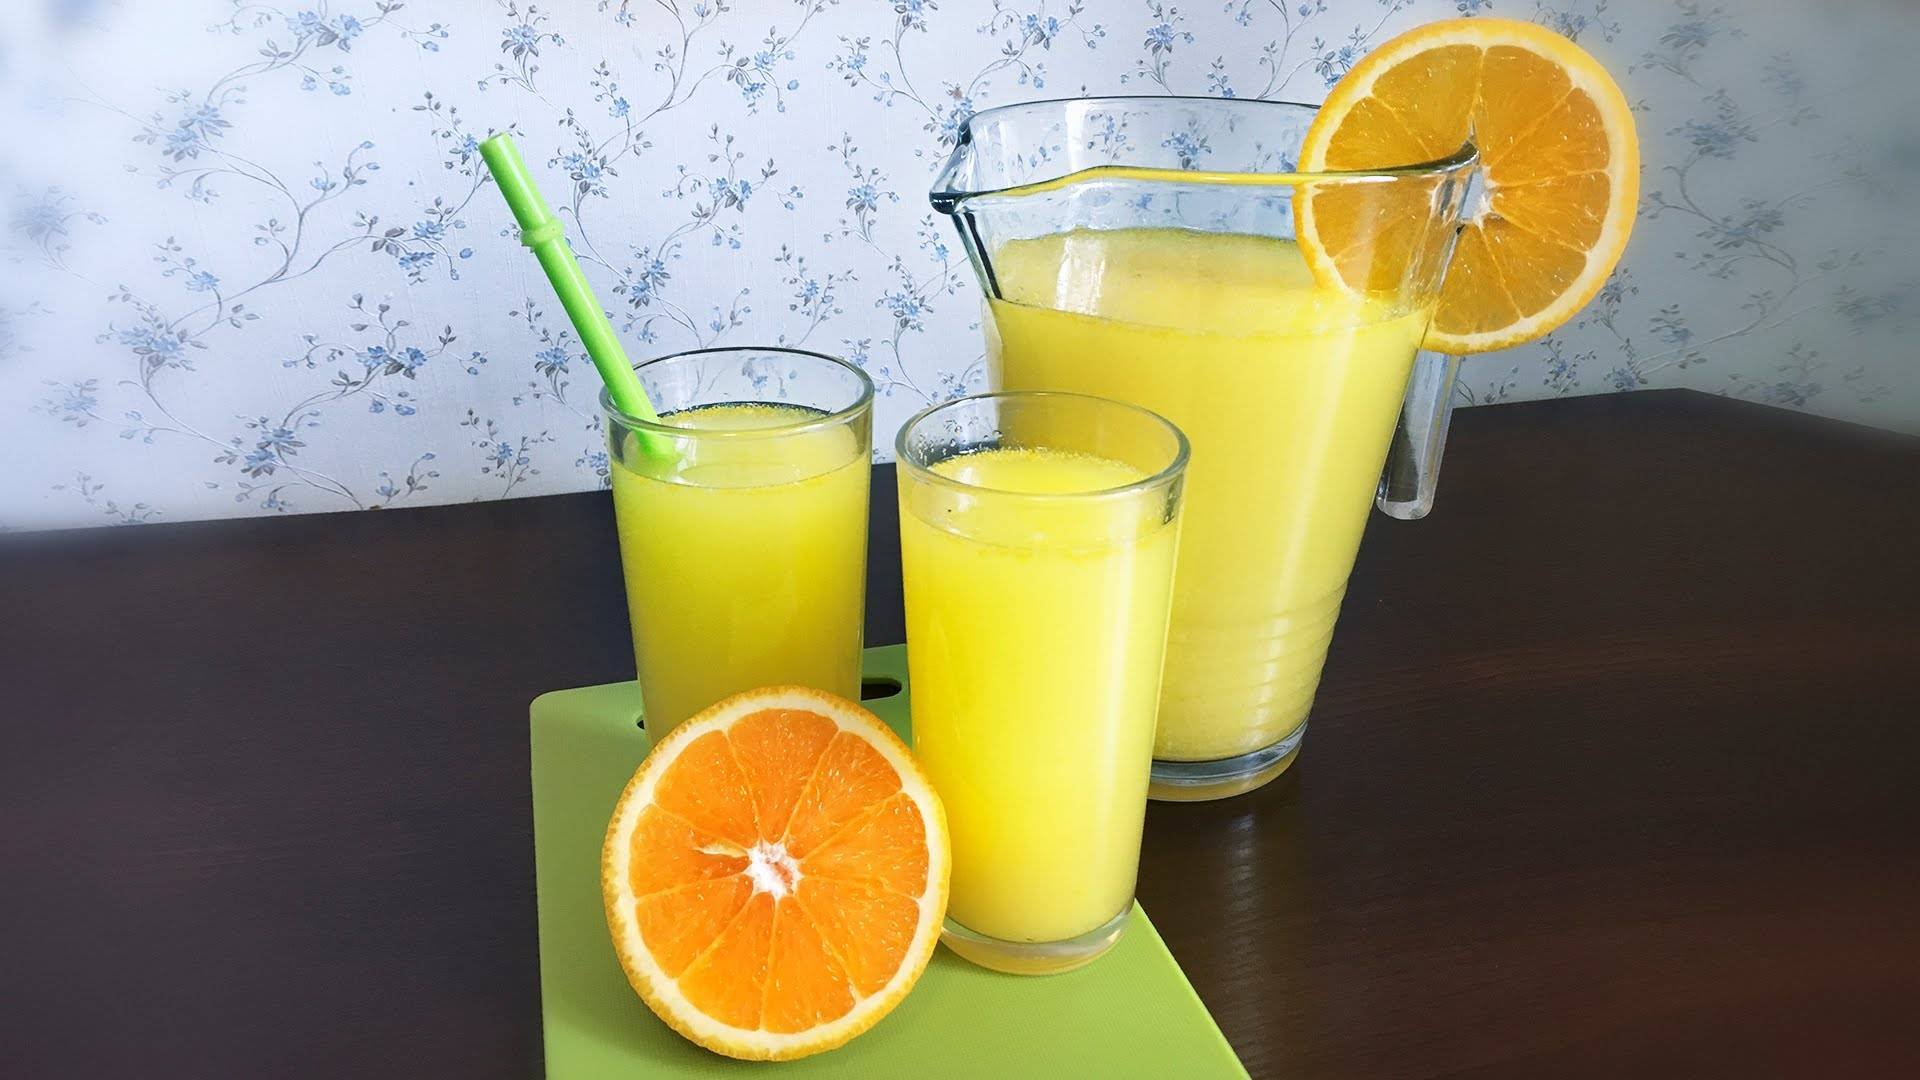 Сок лимона 1 2. Лимонад цитрус. Lemonade 1:1. Лимонад домашний апельсин и лимон. Апельсины и апельсиновый сок.